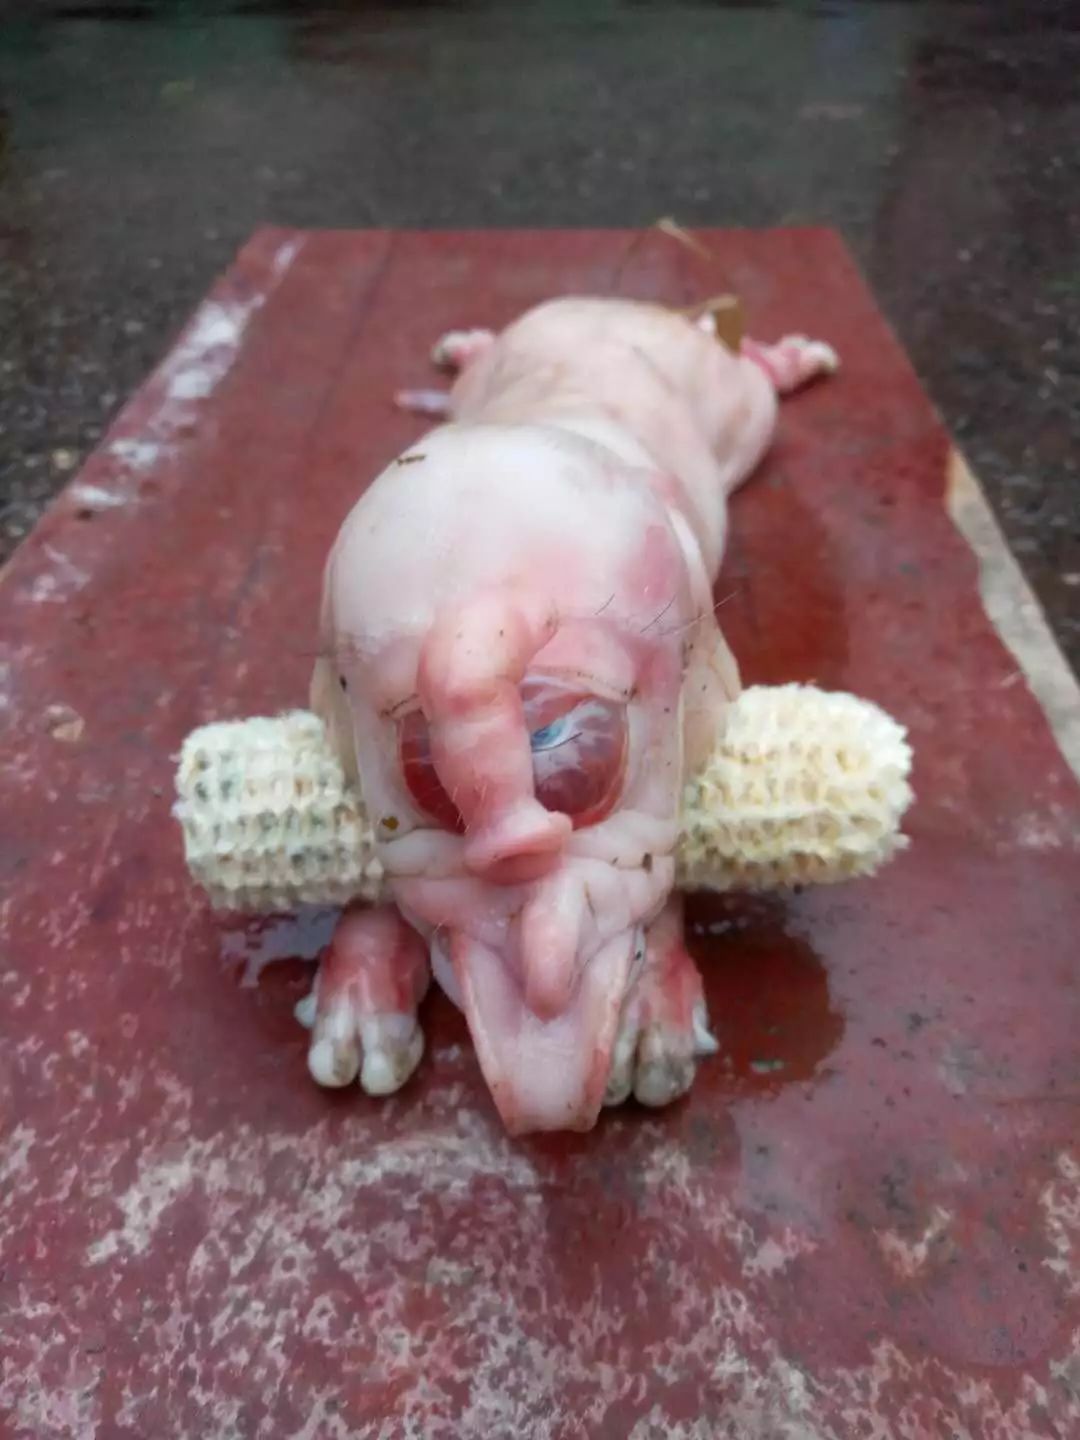 小香猪刚出生的图片图片